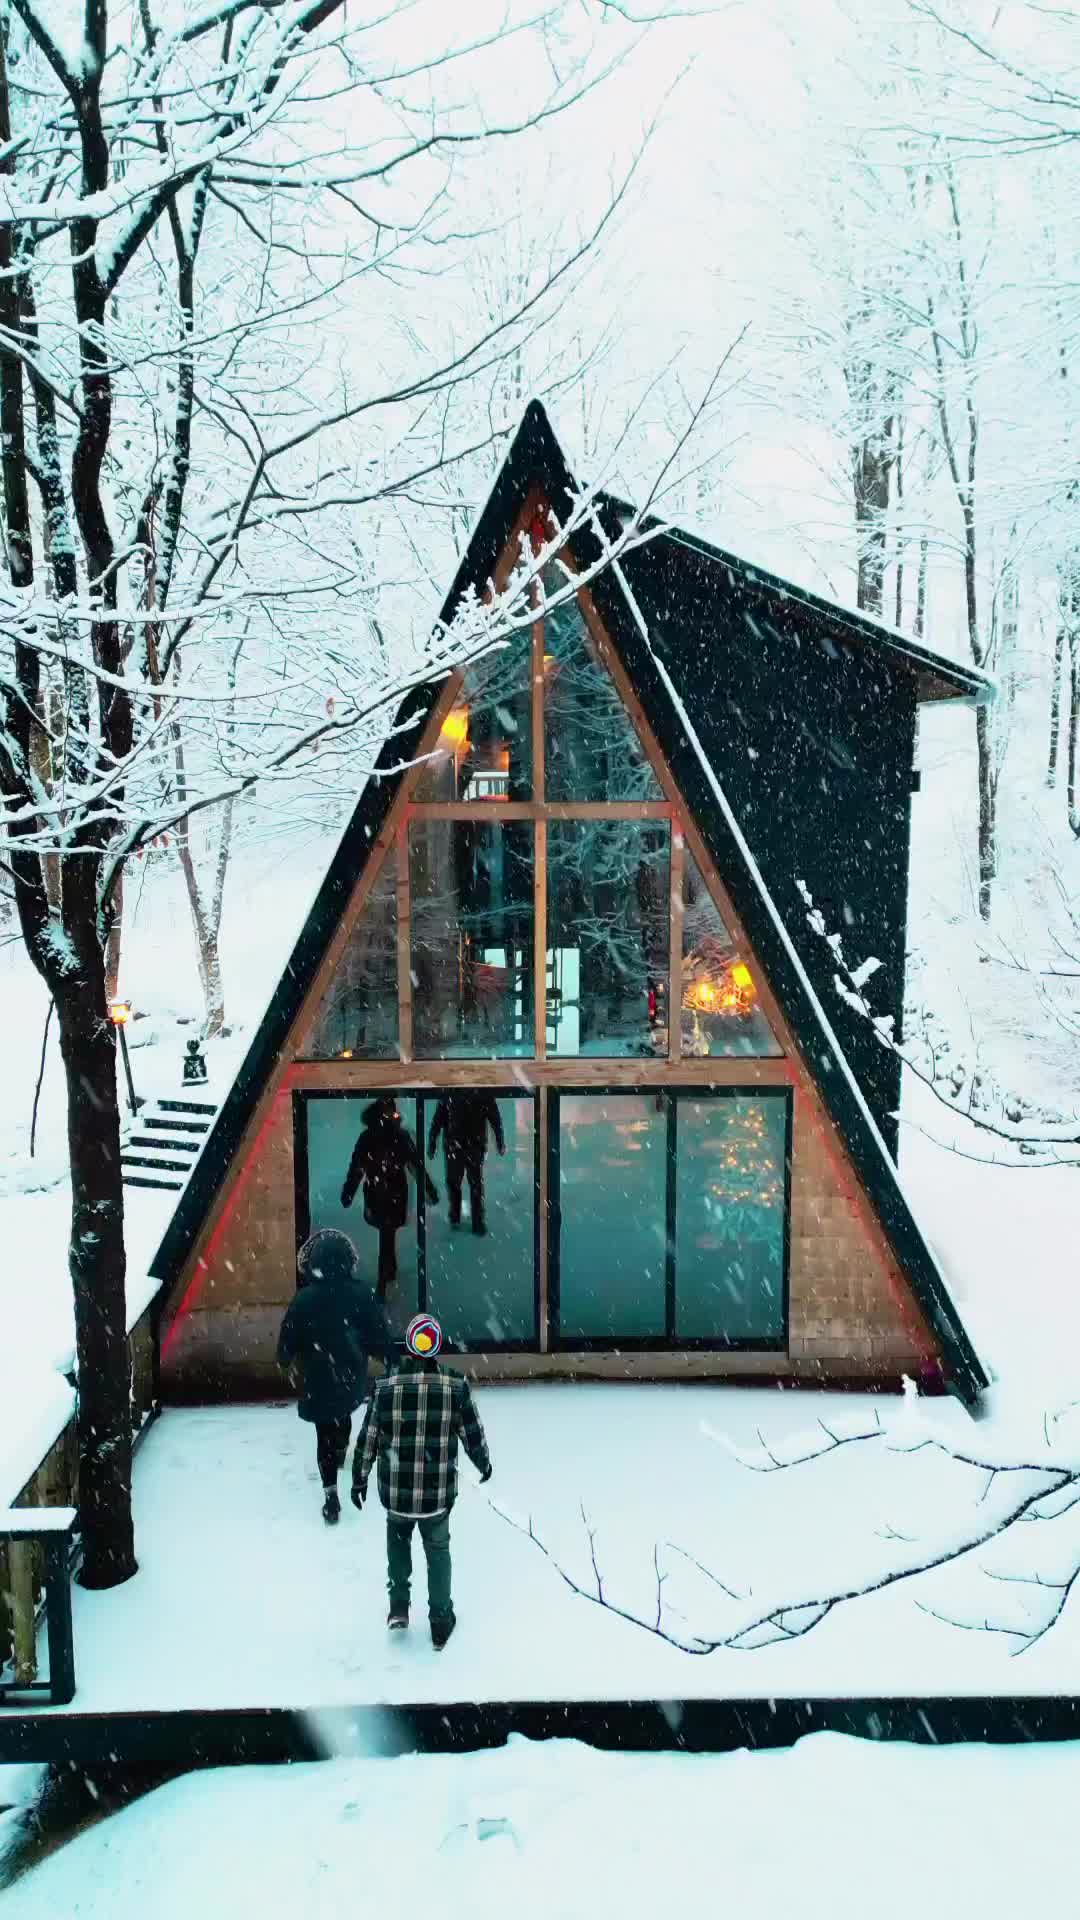 Cozy Cabin Retreat: Enjoy Snowy Views Indoors